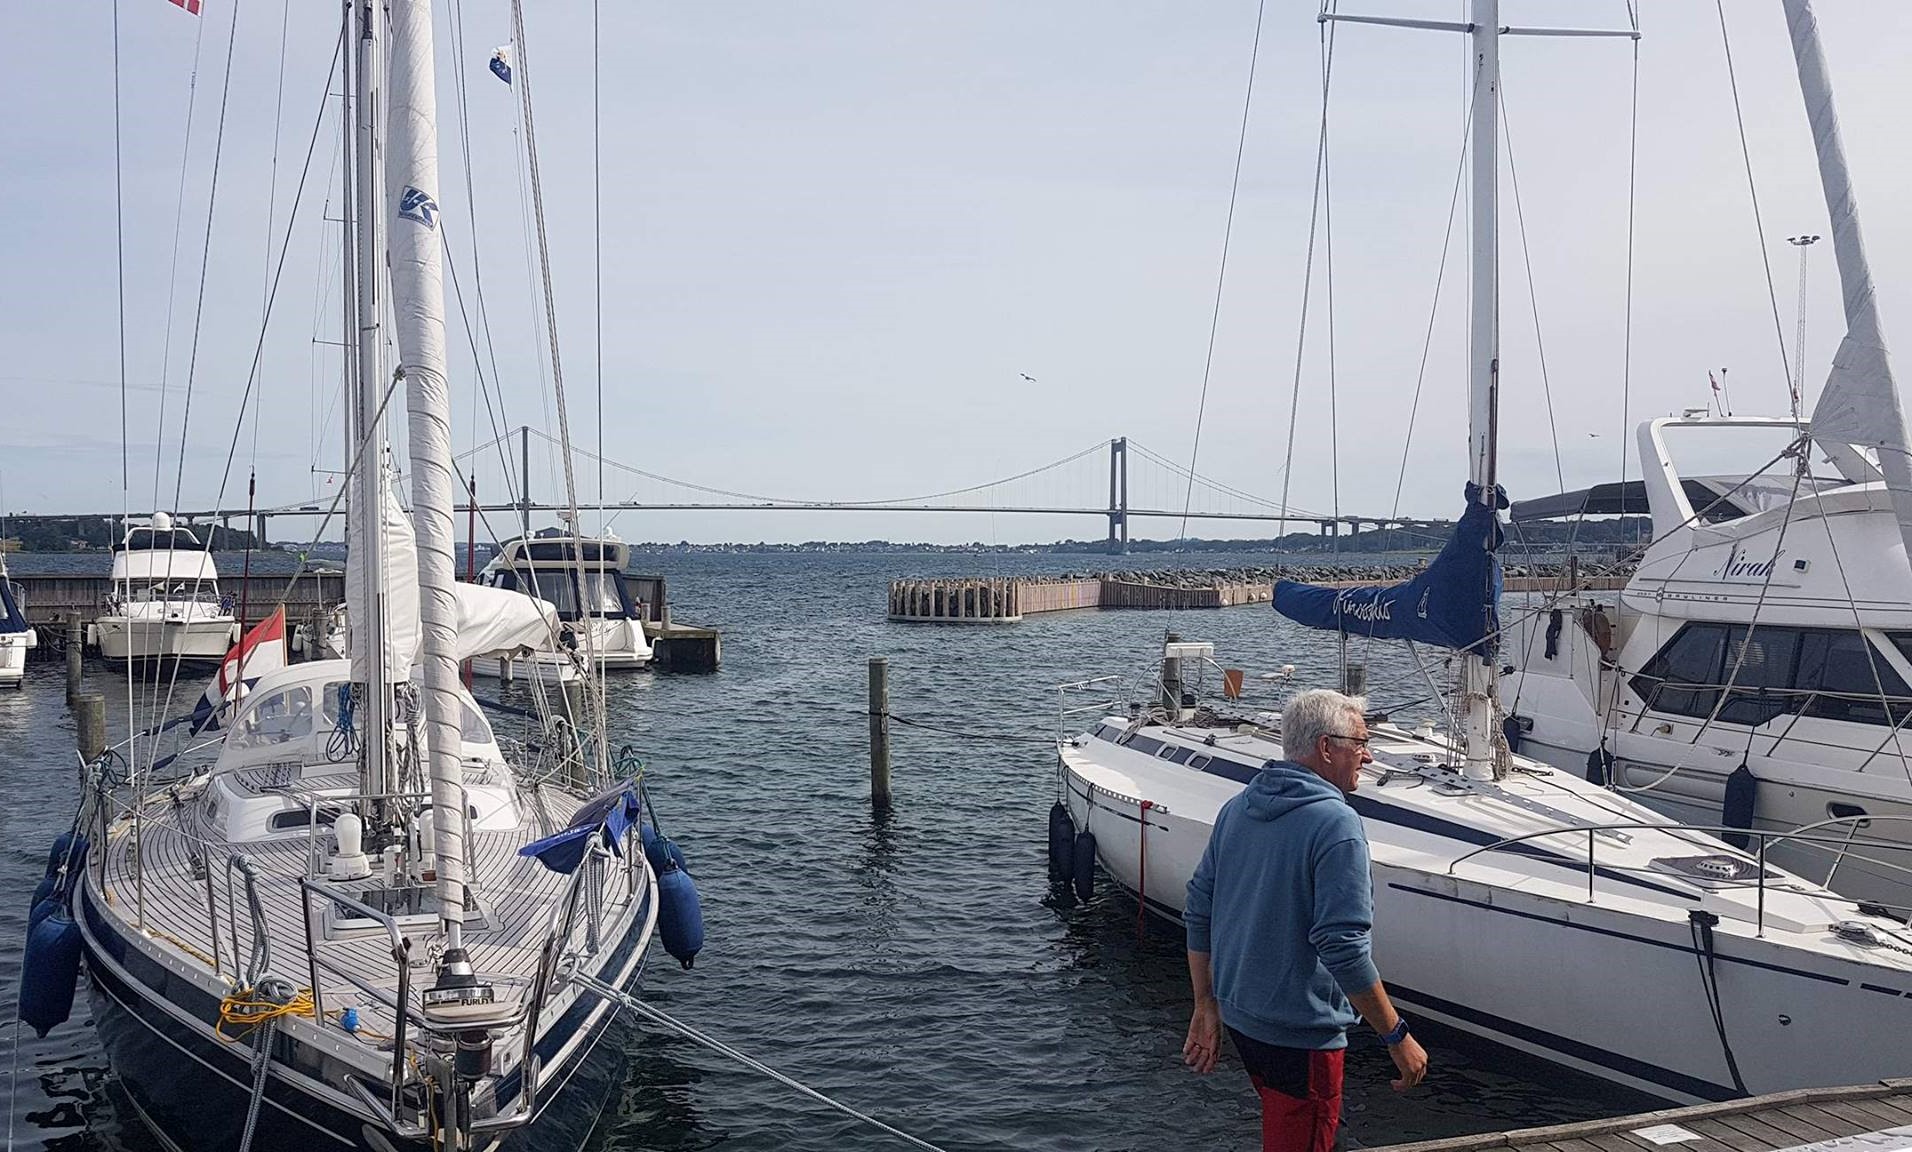 Fantastisk udsigt er der i den private marina i Middelfart, hvor bilerne kan høres i nordlig vind, hvis ikke riggene hyler som lige nu. Fotos: Troels Lykke